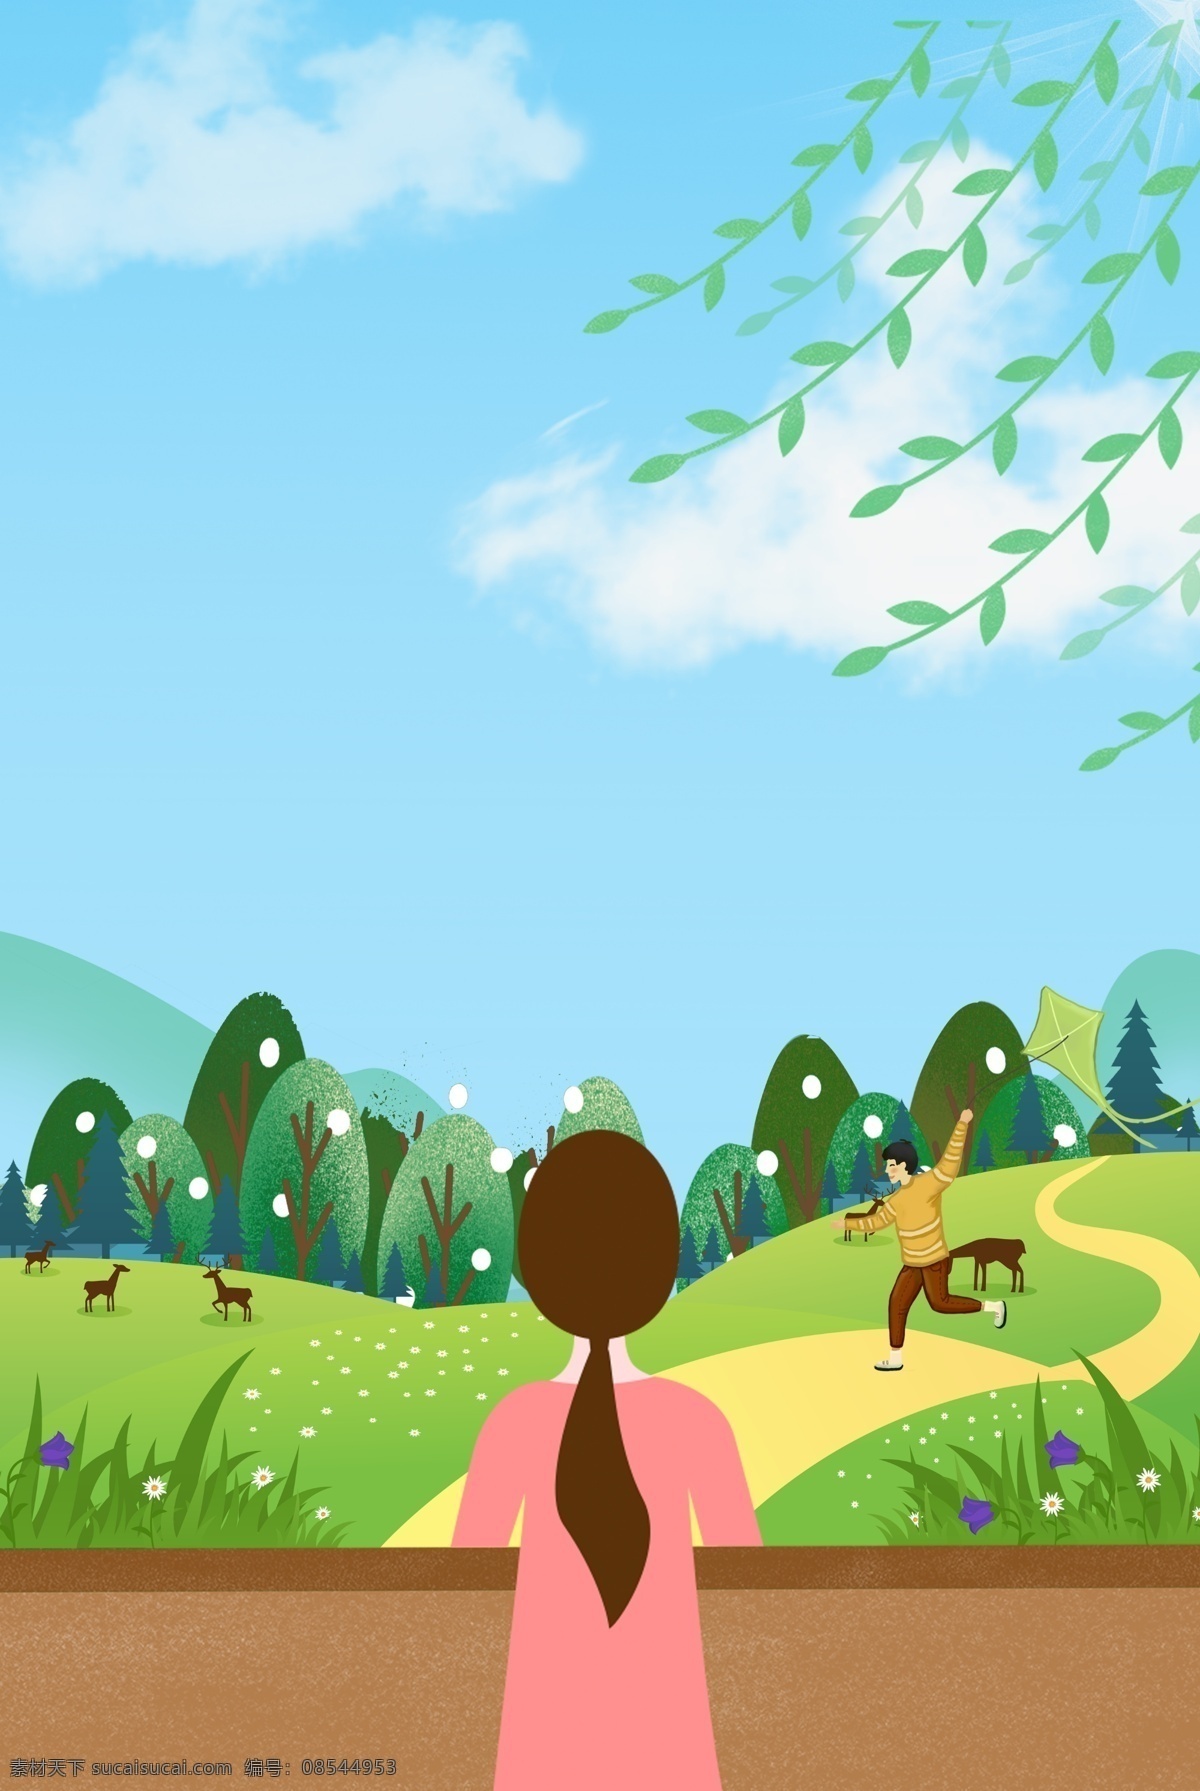 创意 春季 踏青 自然风景 背景 合成 风景 绿色 绿植 树木 远山 放风筝 卡通 手绘